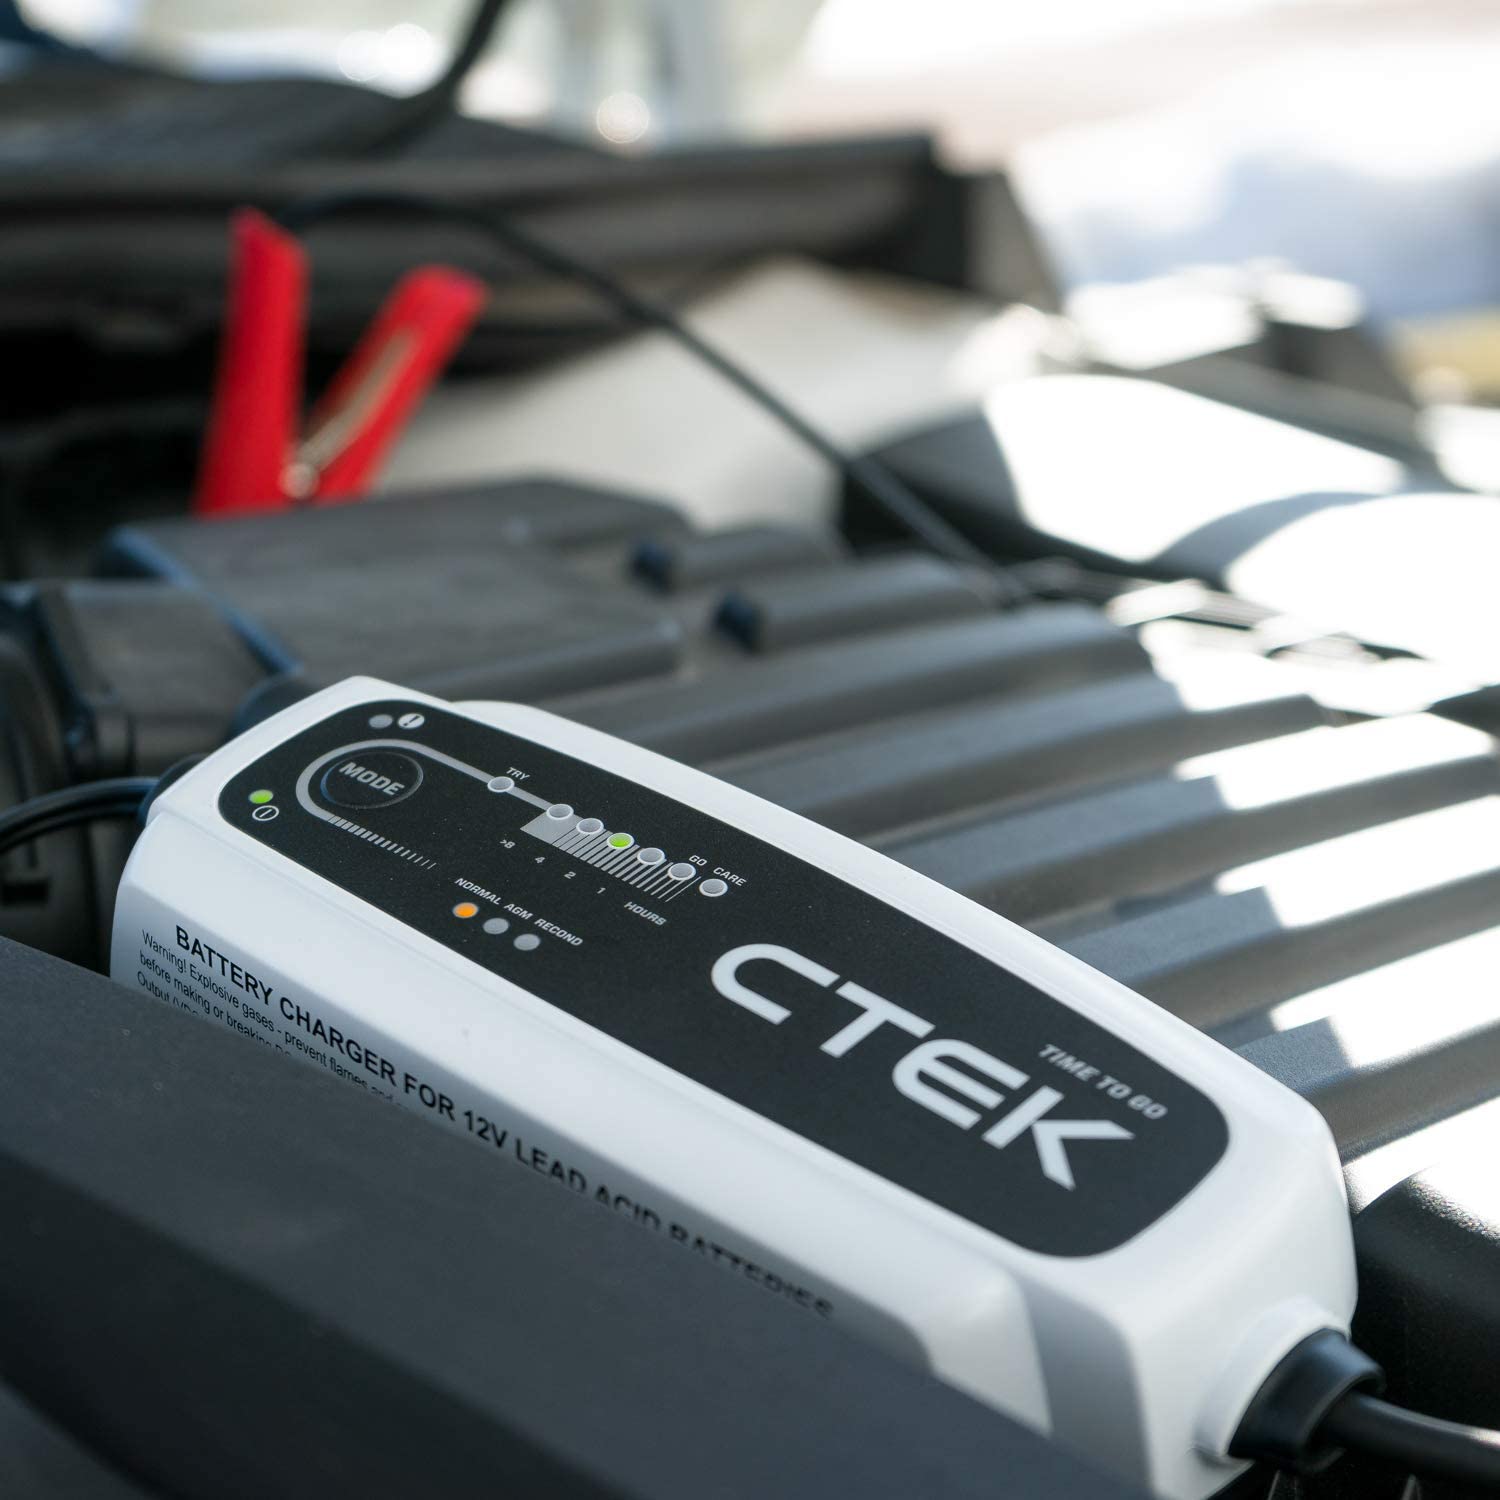 CTEK - Batterieladegerät 12V 5A Time-To-Go – Hoelzle